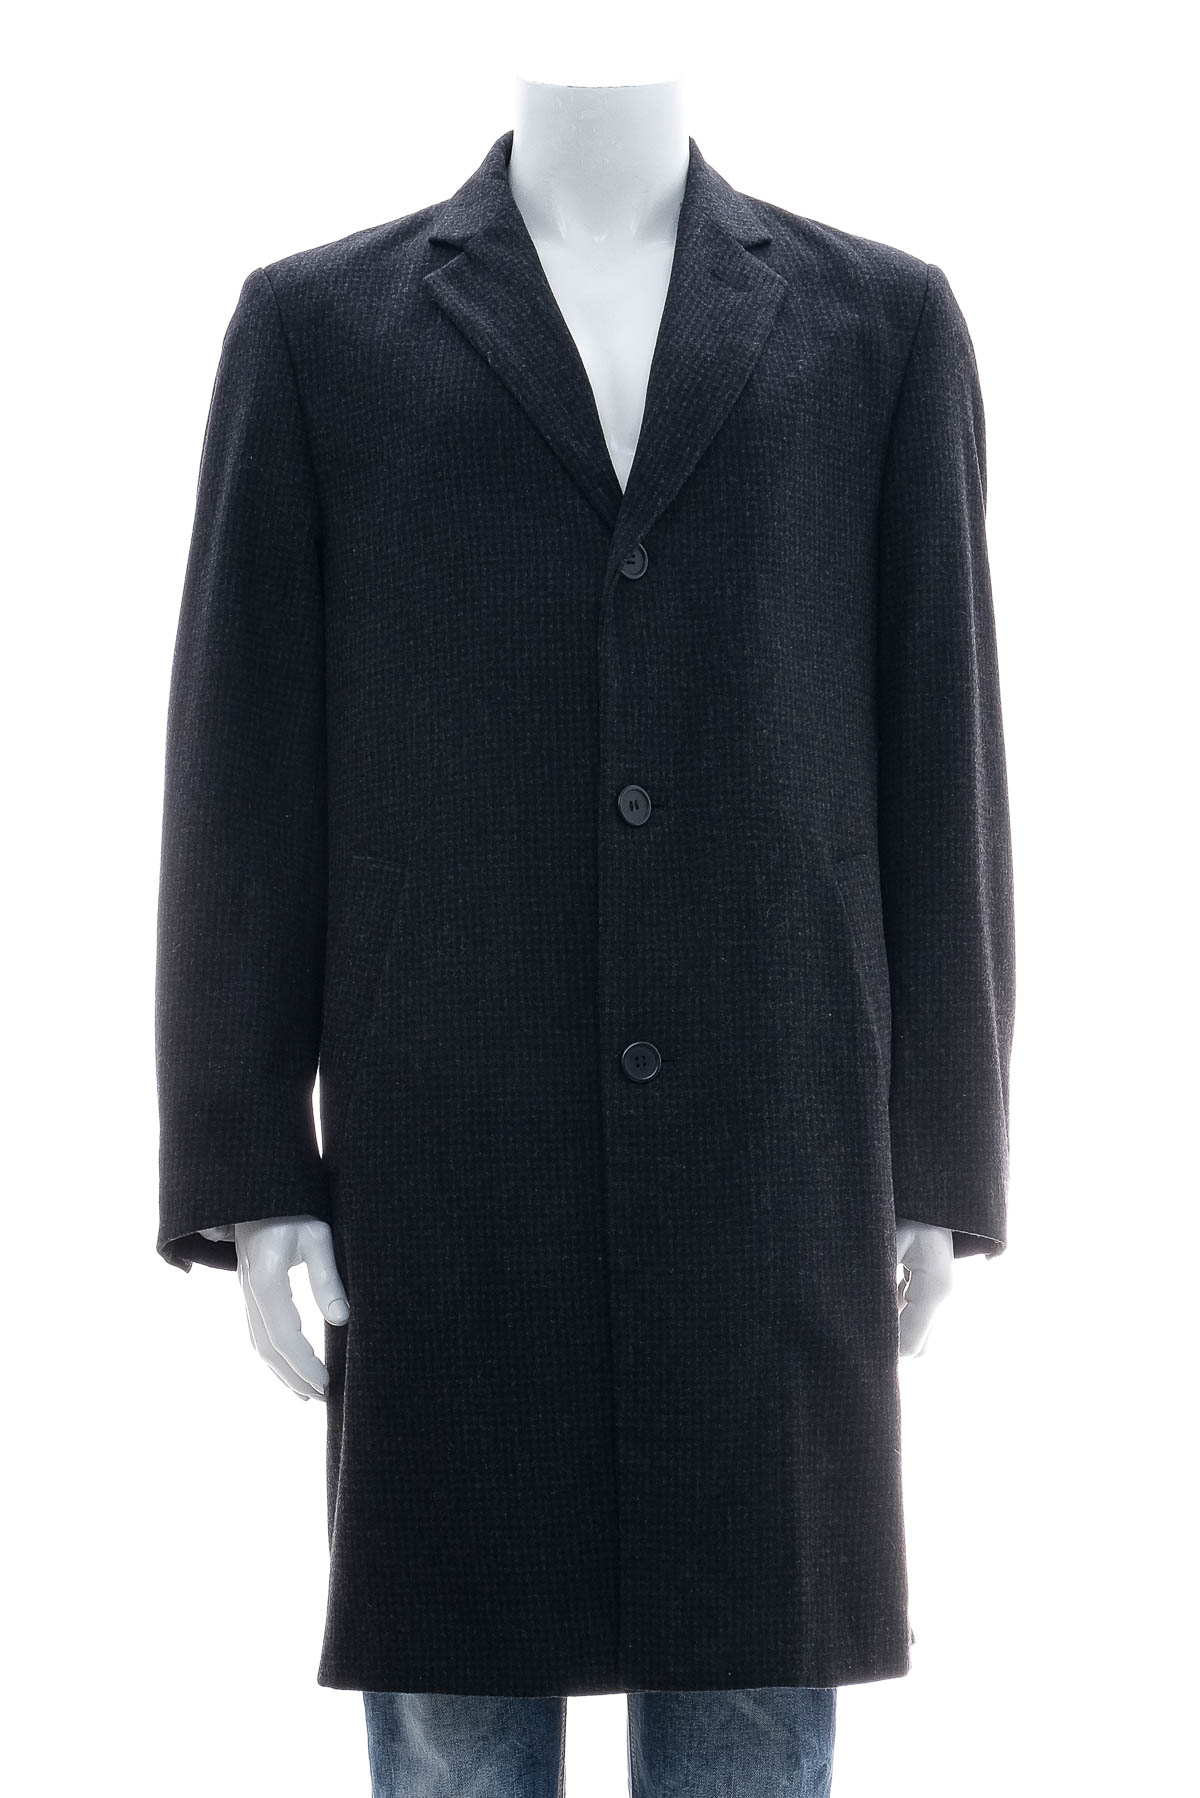 Ανδρικό παλτό - Paul R. Smith - 0